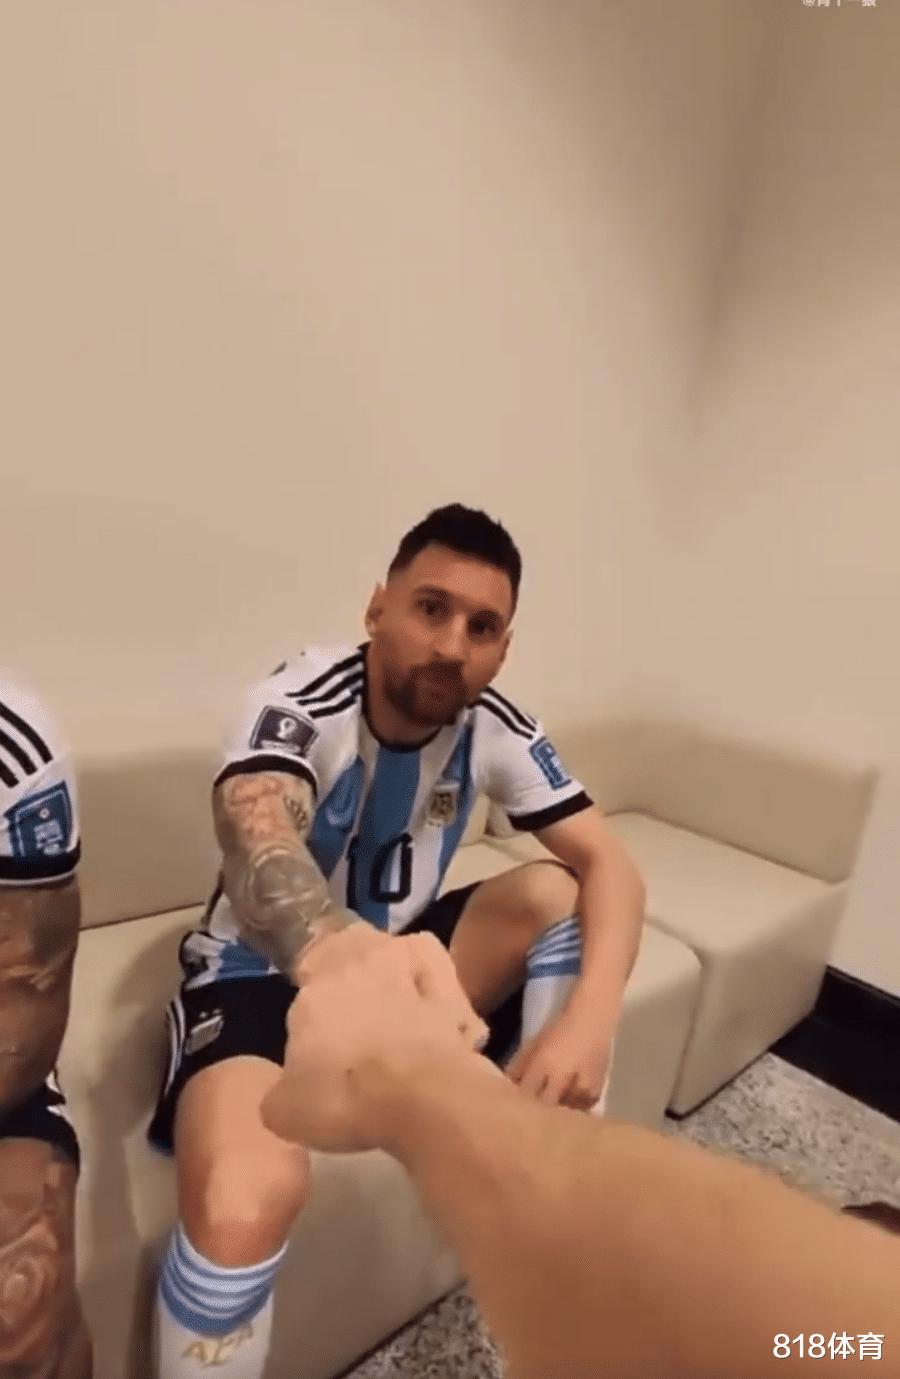 御用保镖! 梅西率阿根廷队拍世界杯定妆照, 德保罗两条大花臂左右护驾(7)